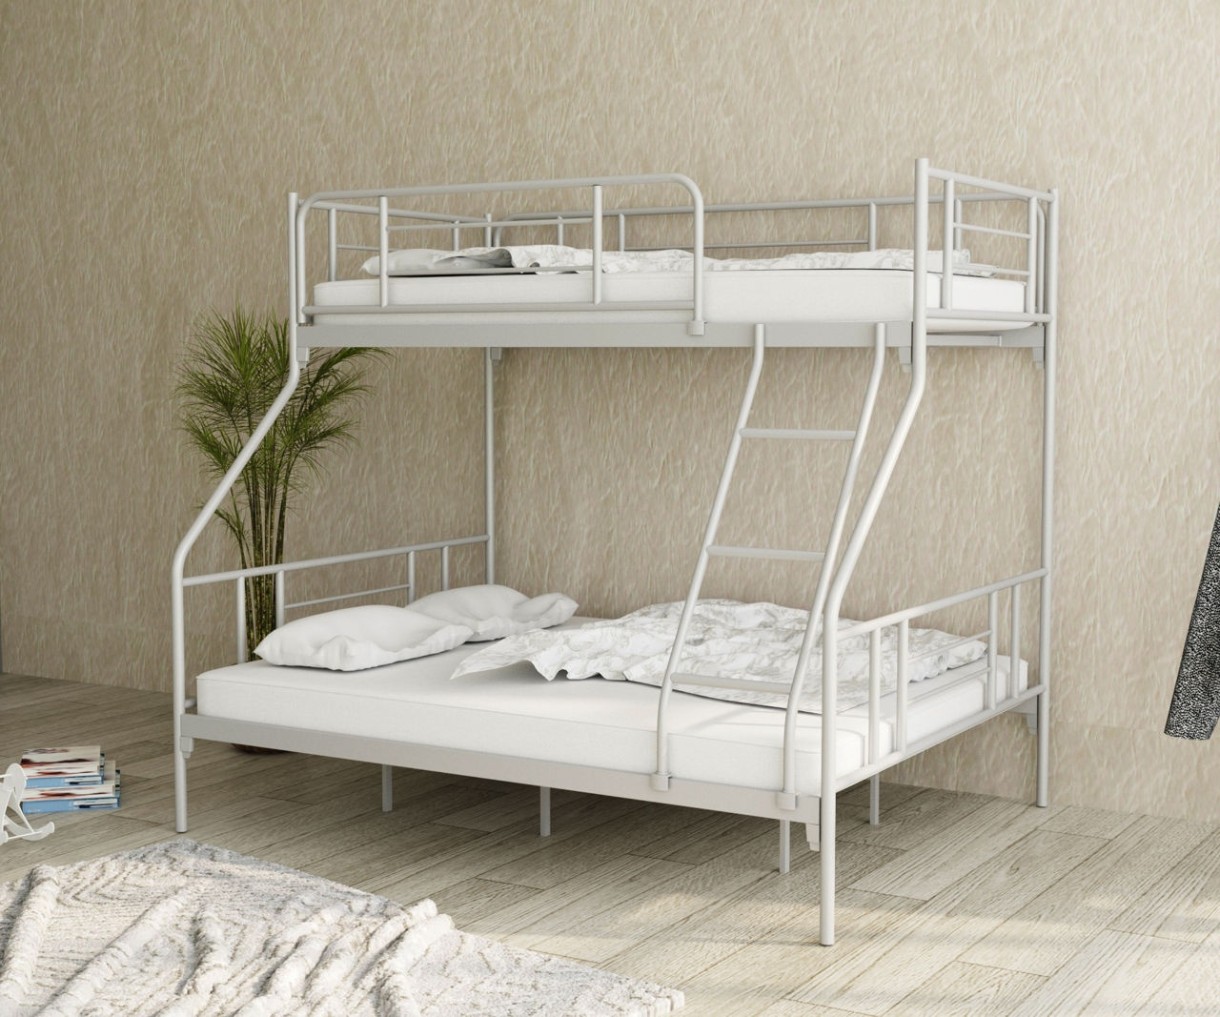 Детская кровать Magnusplus Nova 90x200/140x200 White